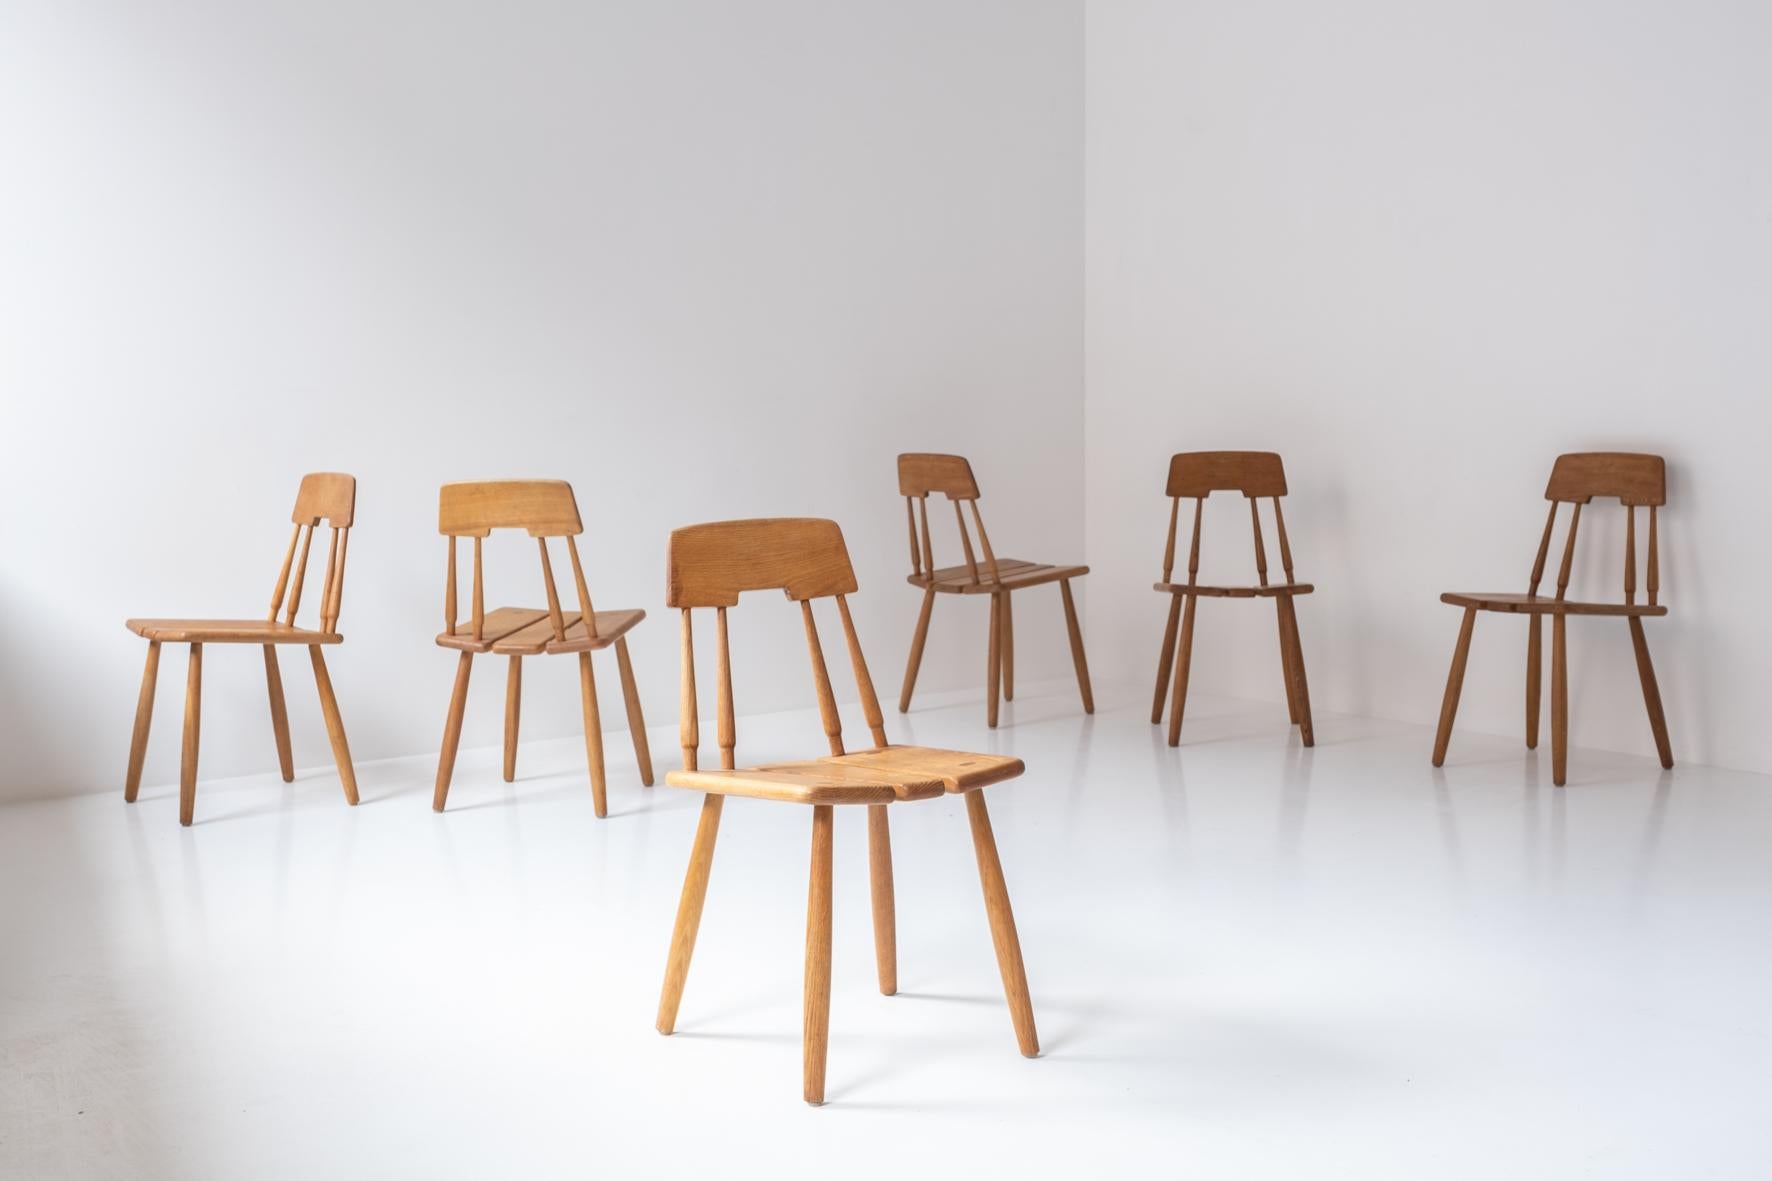 Schöner Satz von 6 Esszimmerstühlen von Carl-Gustav Boulogner für AB Bröderna Wigells Stolfabrik, Schweden 1960er Jahre. Diese Stühle sind aus massivem Eichenholz gefertigt und befinden sich in einem sehr guten Originalzustand. Ein Sammlerstück.